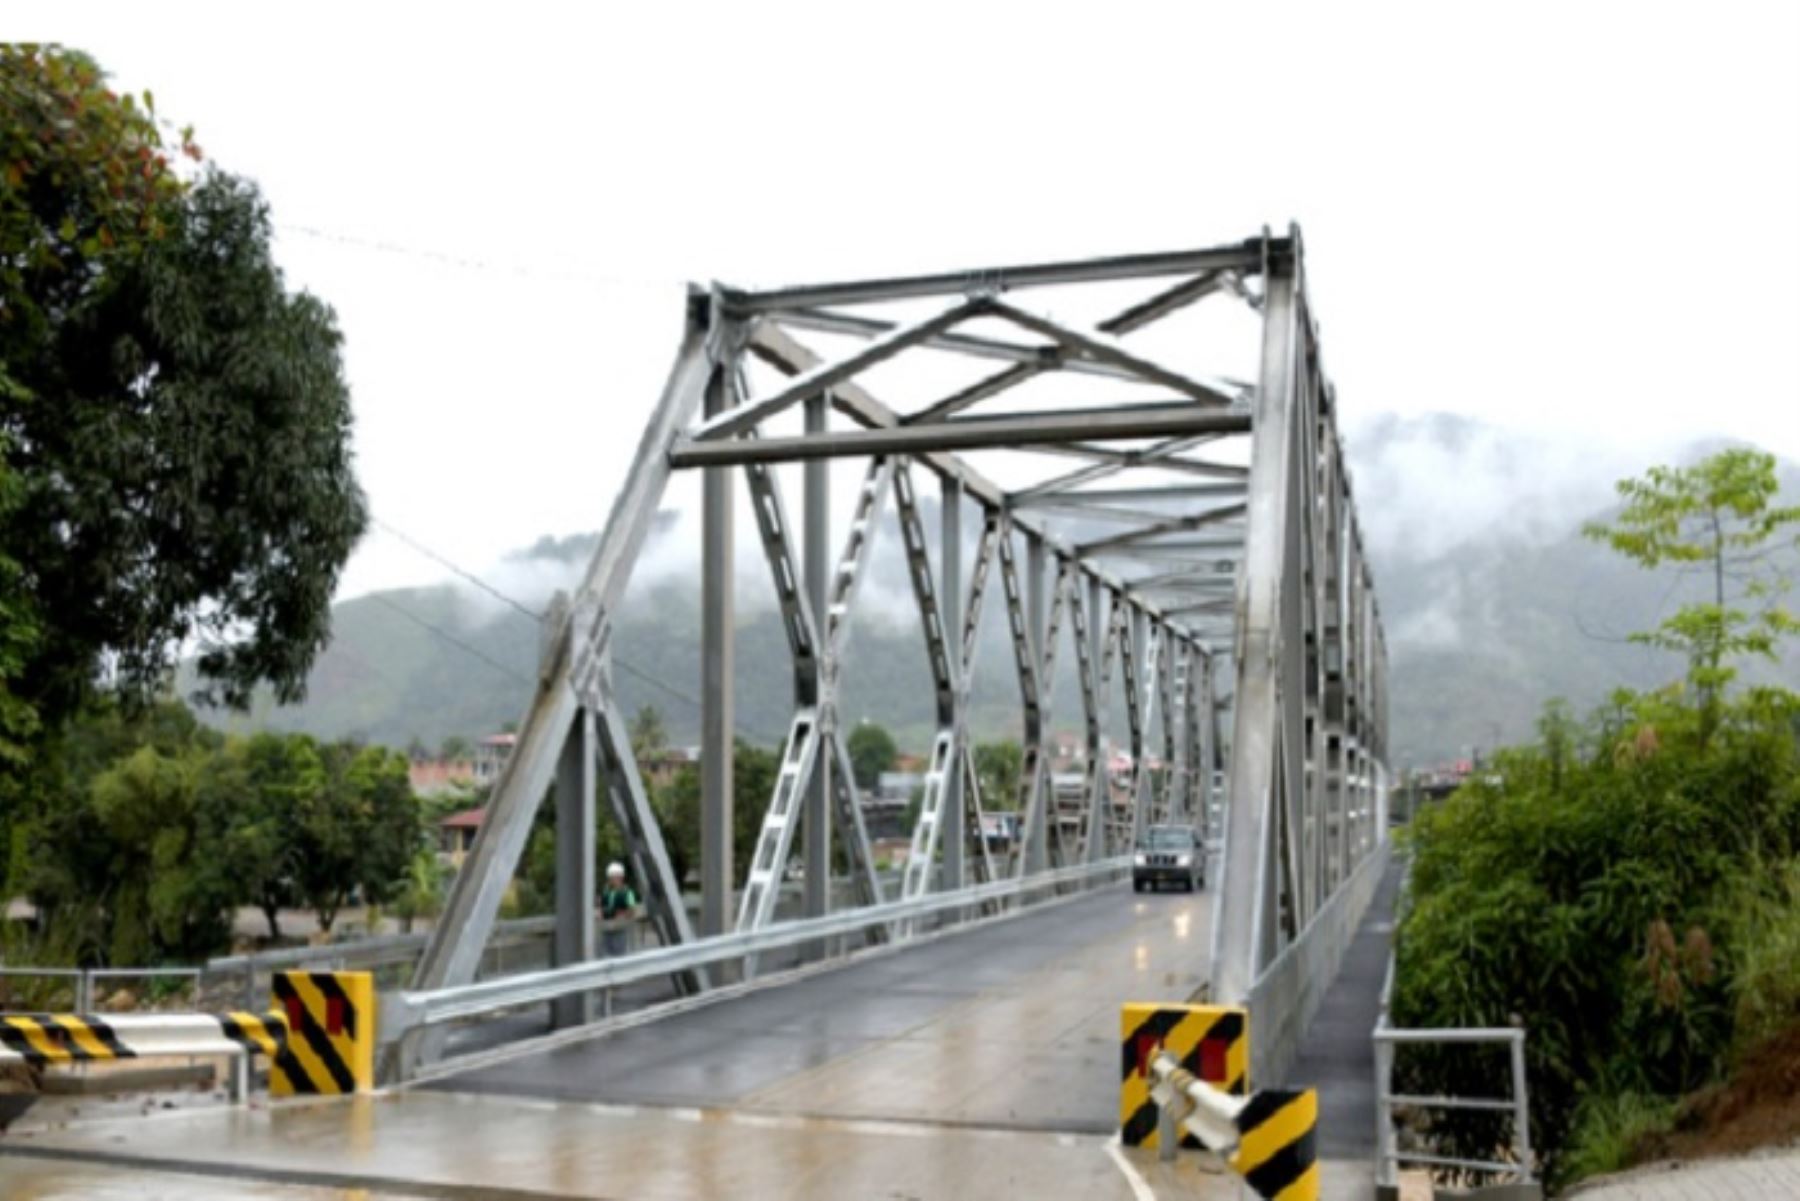 Se invirtieron S/ 1.7 millones en la instalación de la vía modular, la cual es parte de la carretera nacional que conecta Satipo con Santa Rosa de Ocopa (provincia de La Concepción).